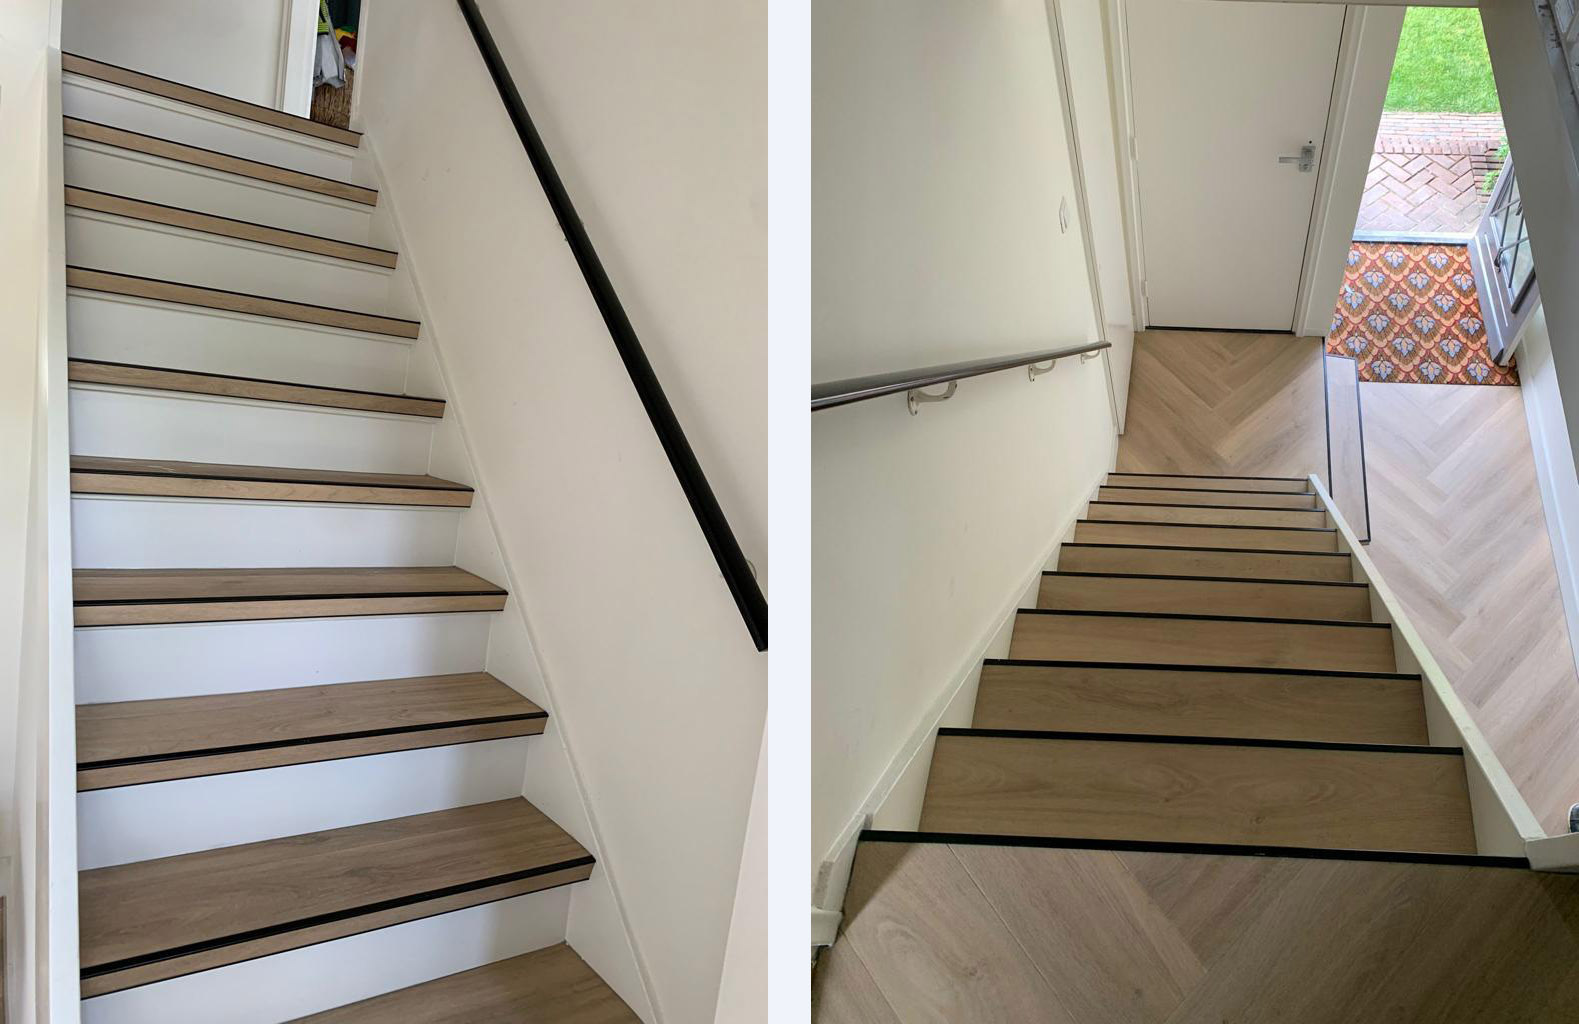 Laat je trap renoveren in Enschede door EXTRA Bouwen! Traprenovatie binnen één dag ✓Kwaliteit ✓Trapbekleding ✓LED verlichting ✓PVC ✓laminaat. Ben jij op zoek naar een vloerenspecialist die jouw trap kan renoveren binnen één dag in Enschede? Kijk dan niet verder! 